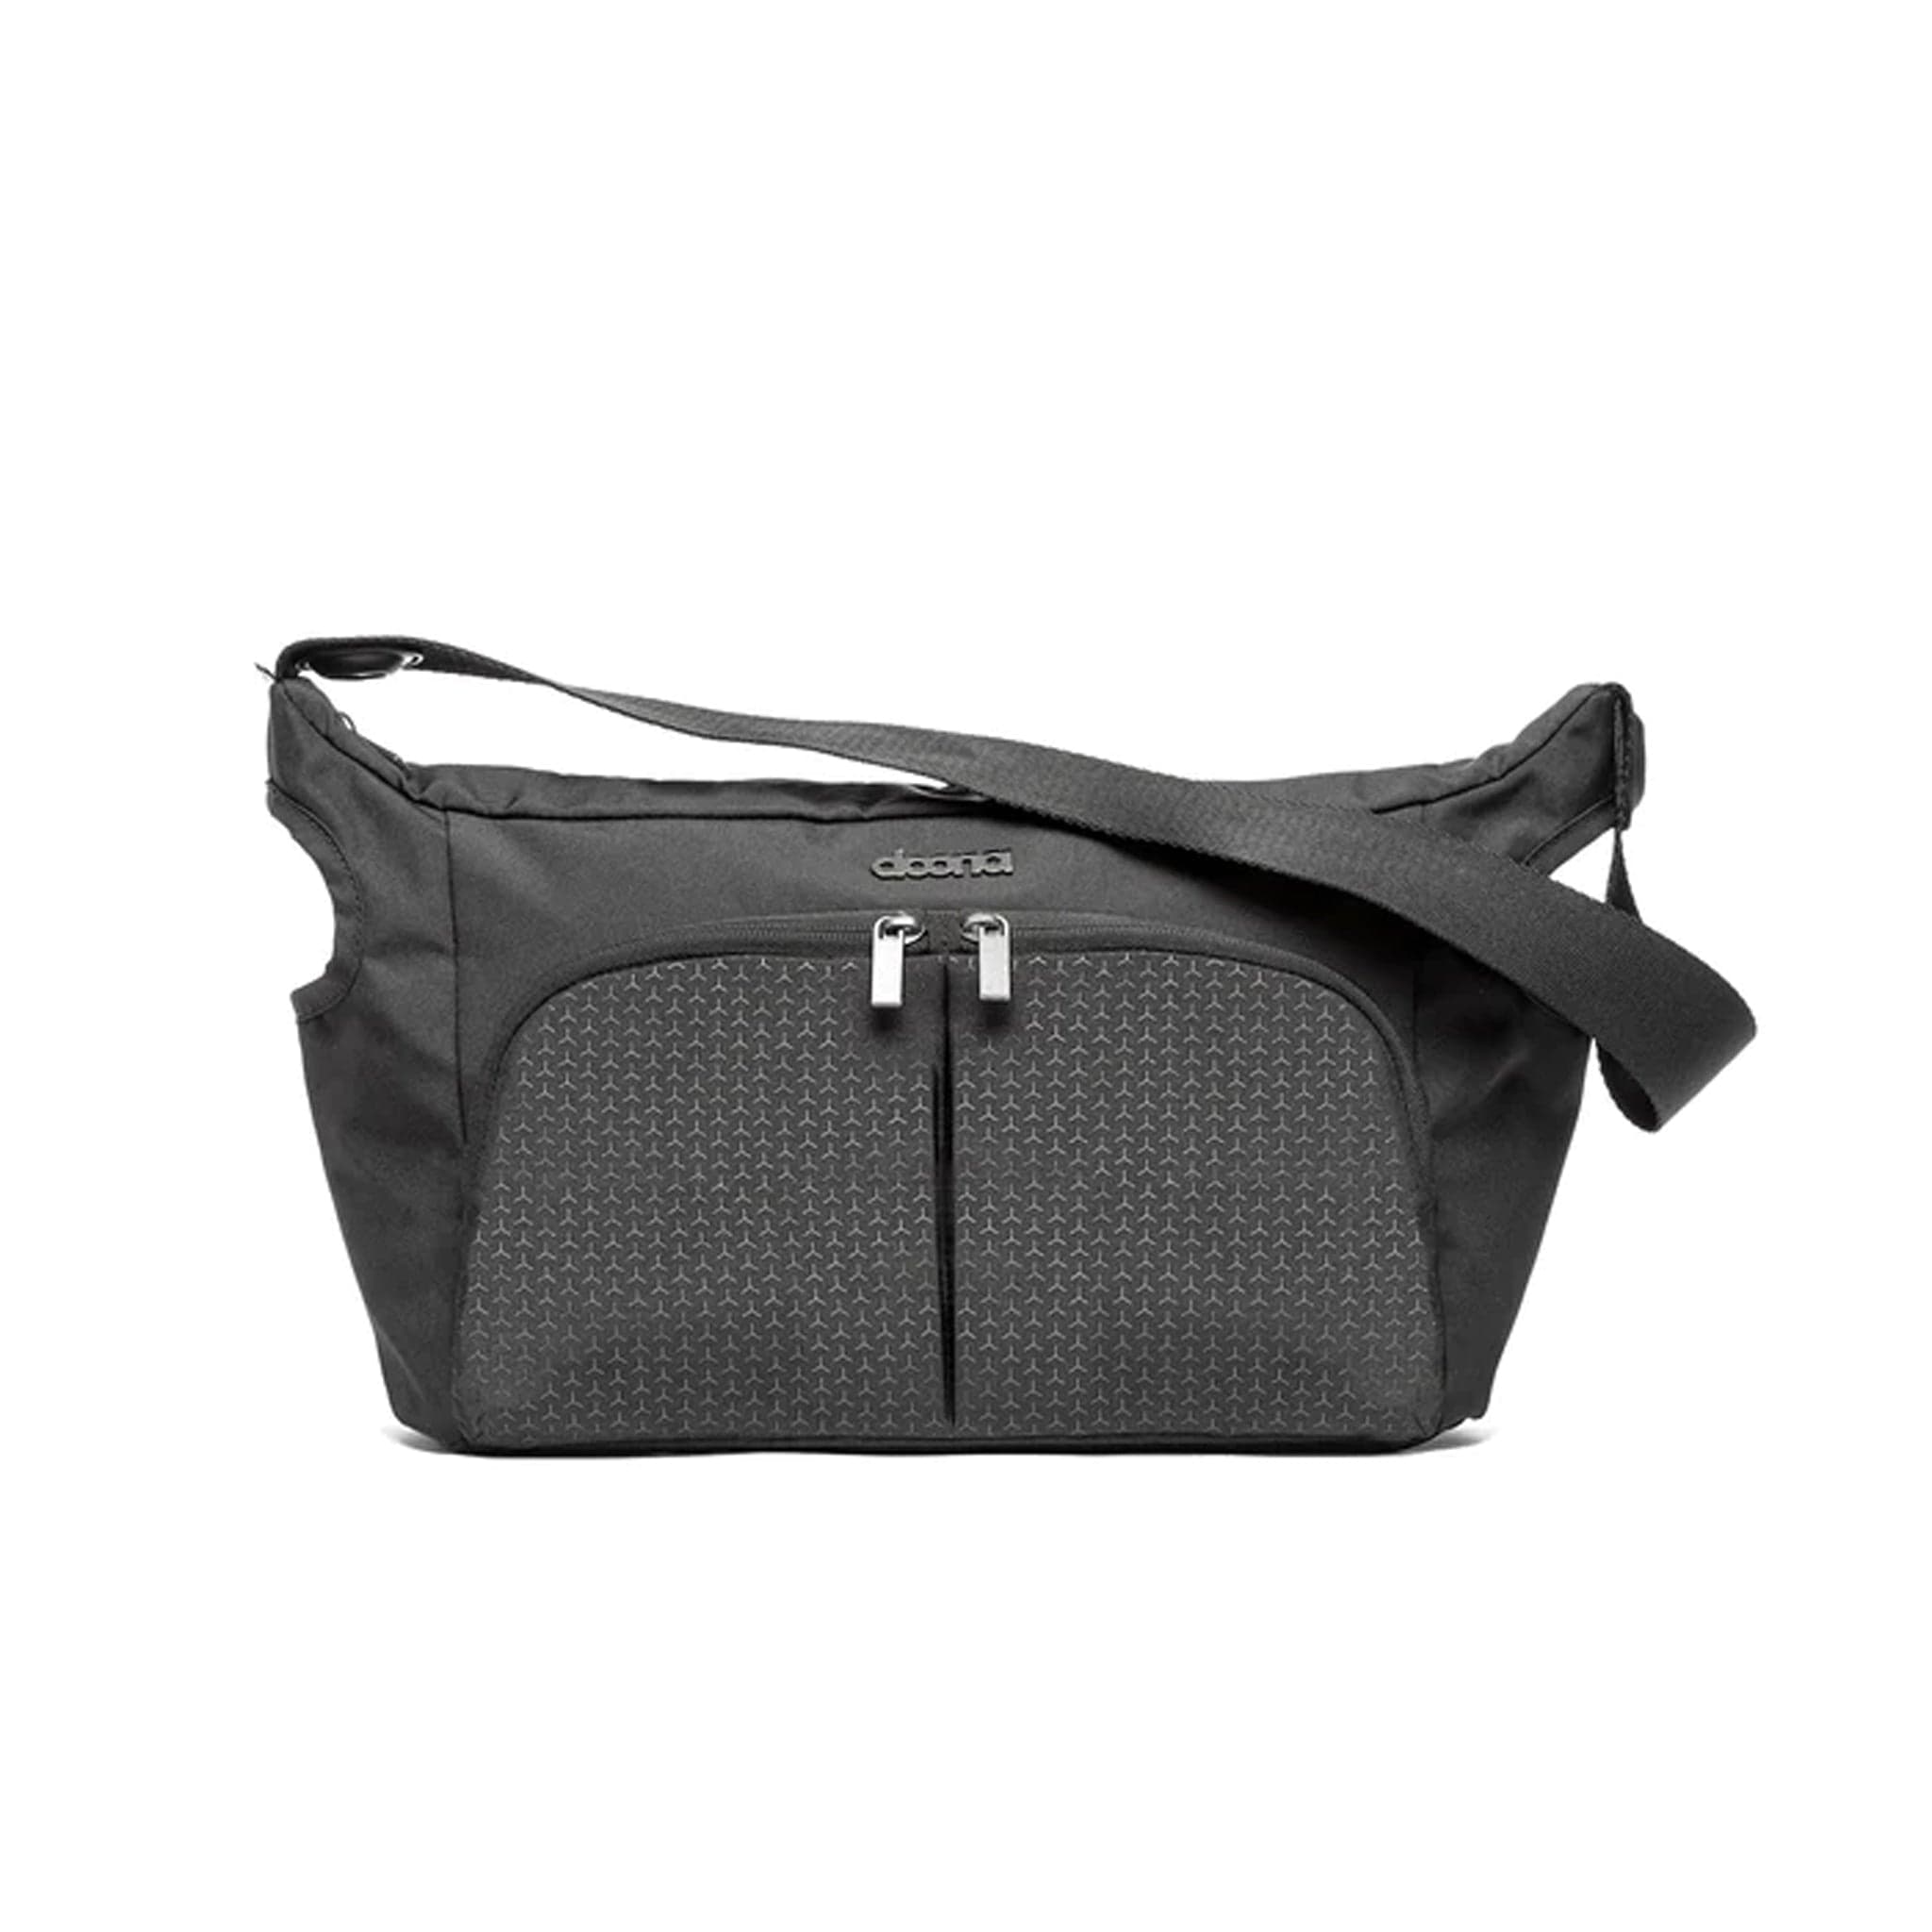 Doona car seat raincovers Doona Essential Bag in Nitro Black acc/spa/66158